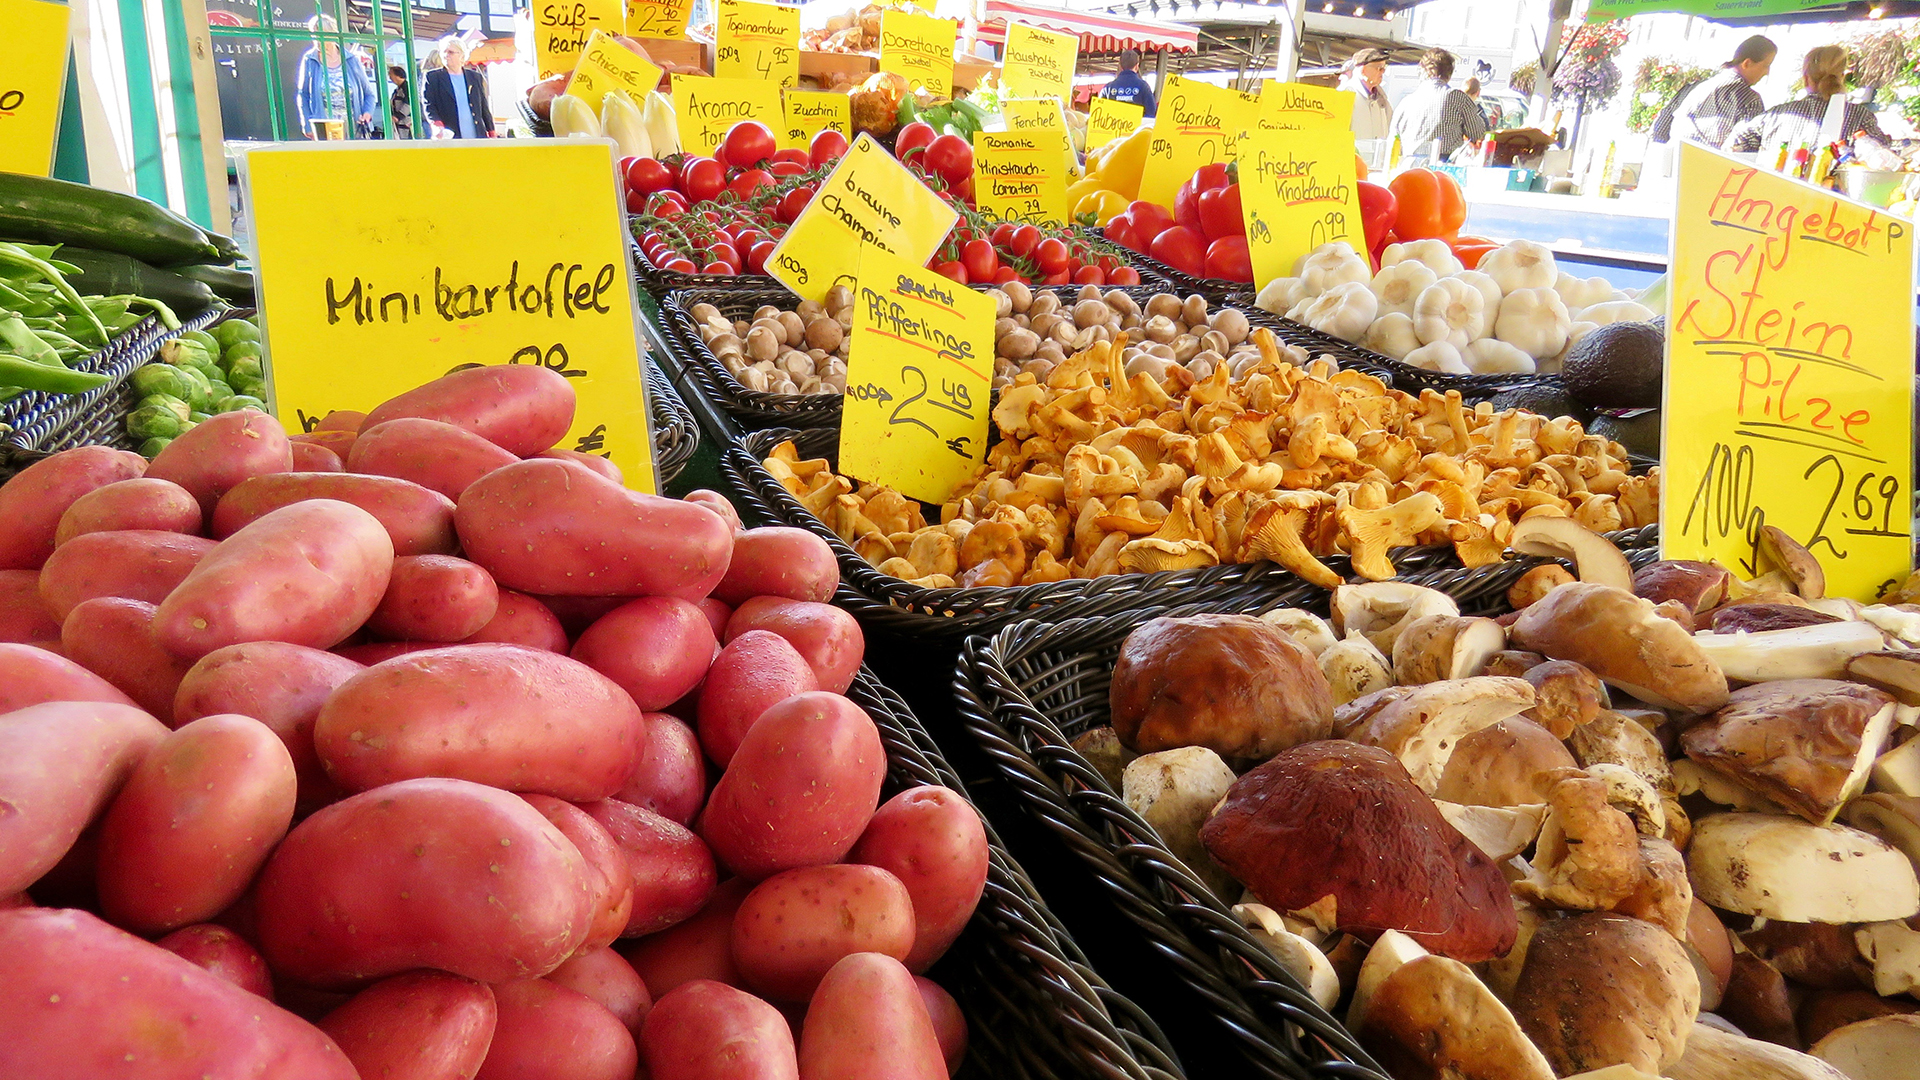 In Auslagen an einem Marktstand werden unter anderem Minikartoffeln und verschiedene Pilzsorten angeboten.